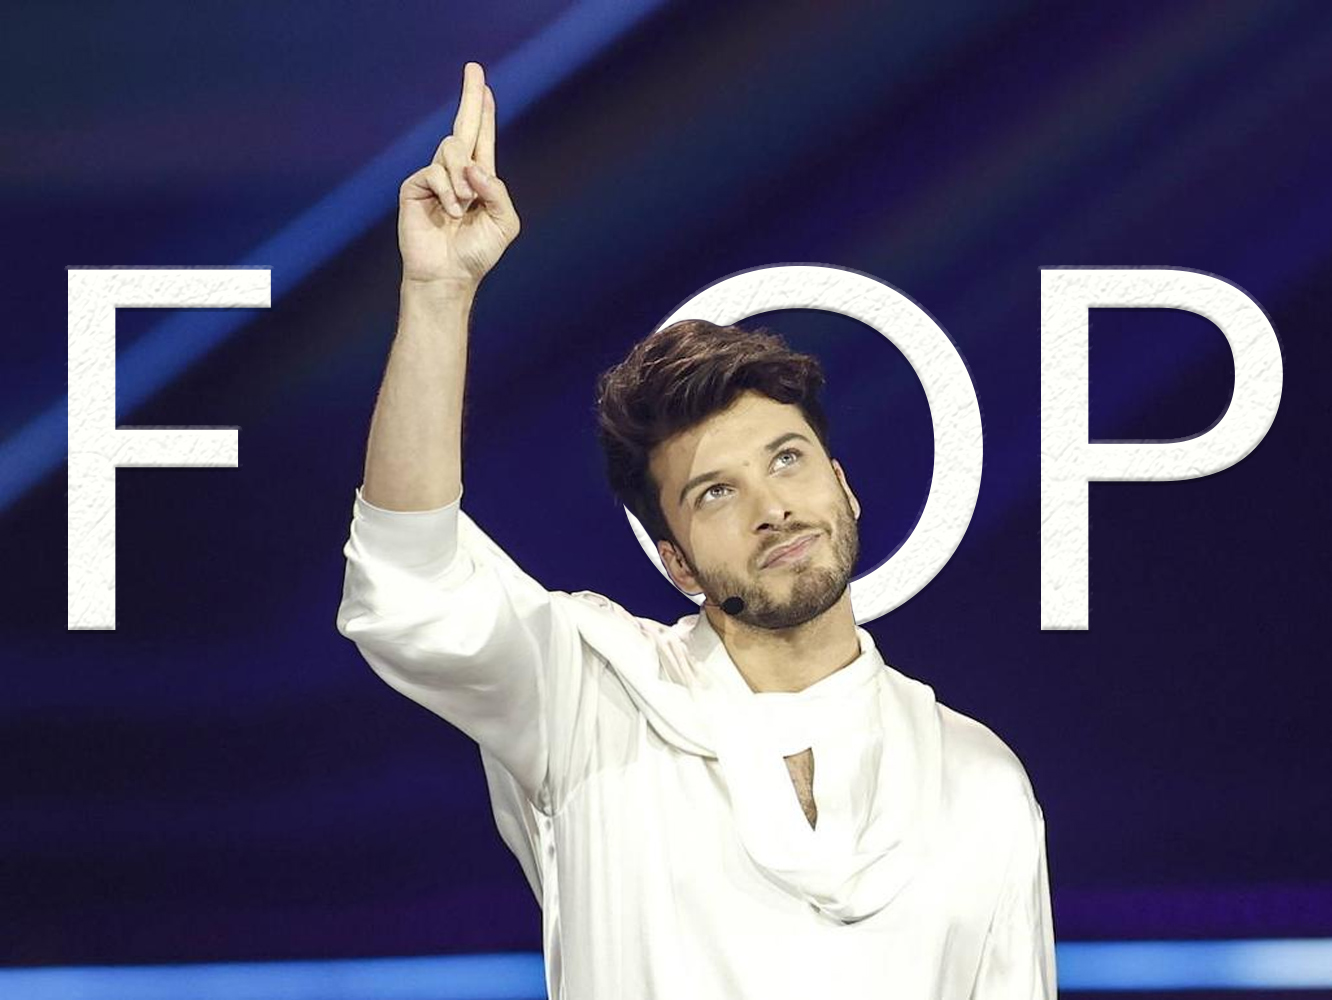  ¿Por qué volvió a fracasar anoche España en Eurovisión?